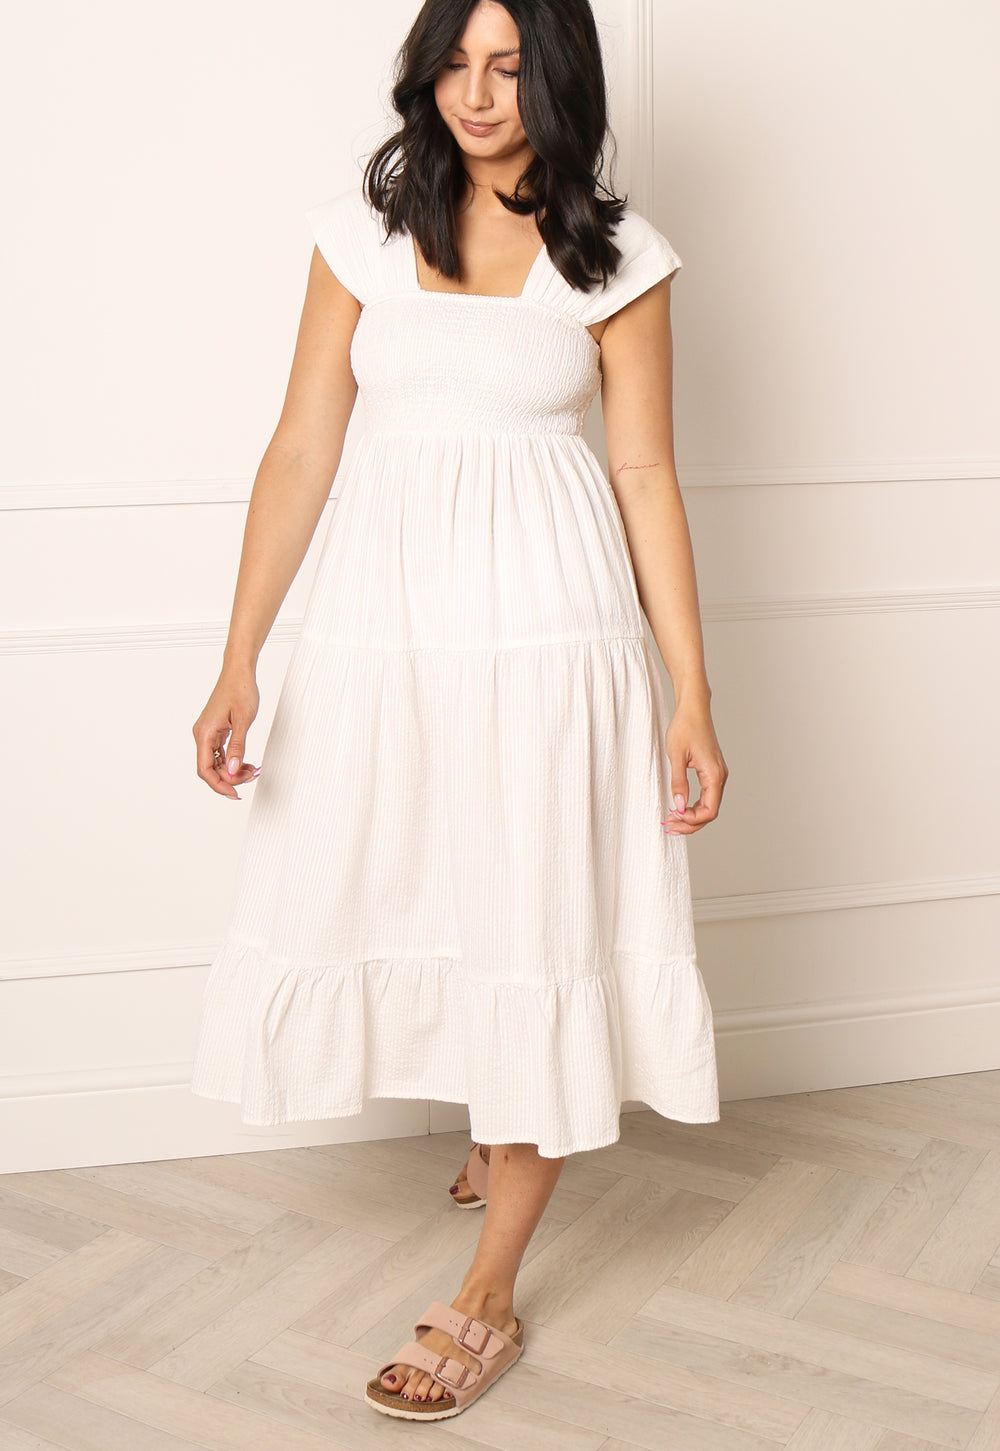 VERO MODA Toni Wide Strap Tiered Cotton Midi Sun Dress in White - One Nation Clothing